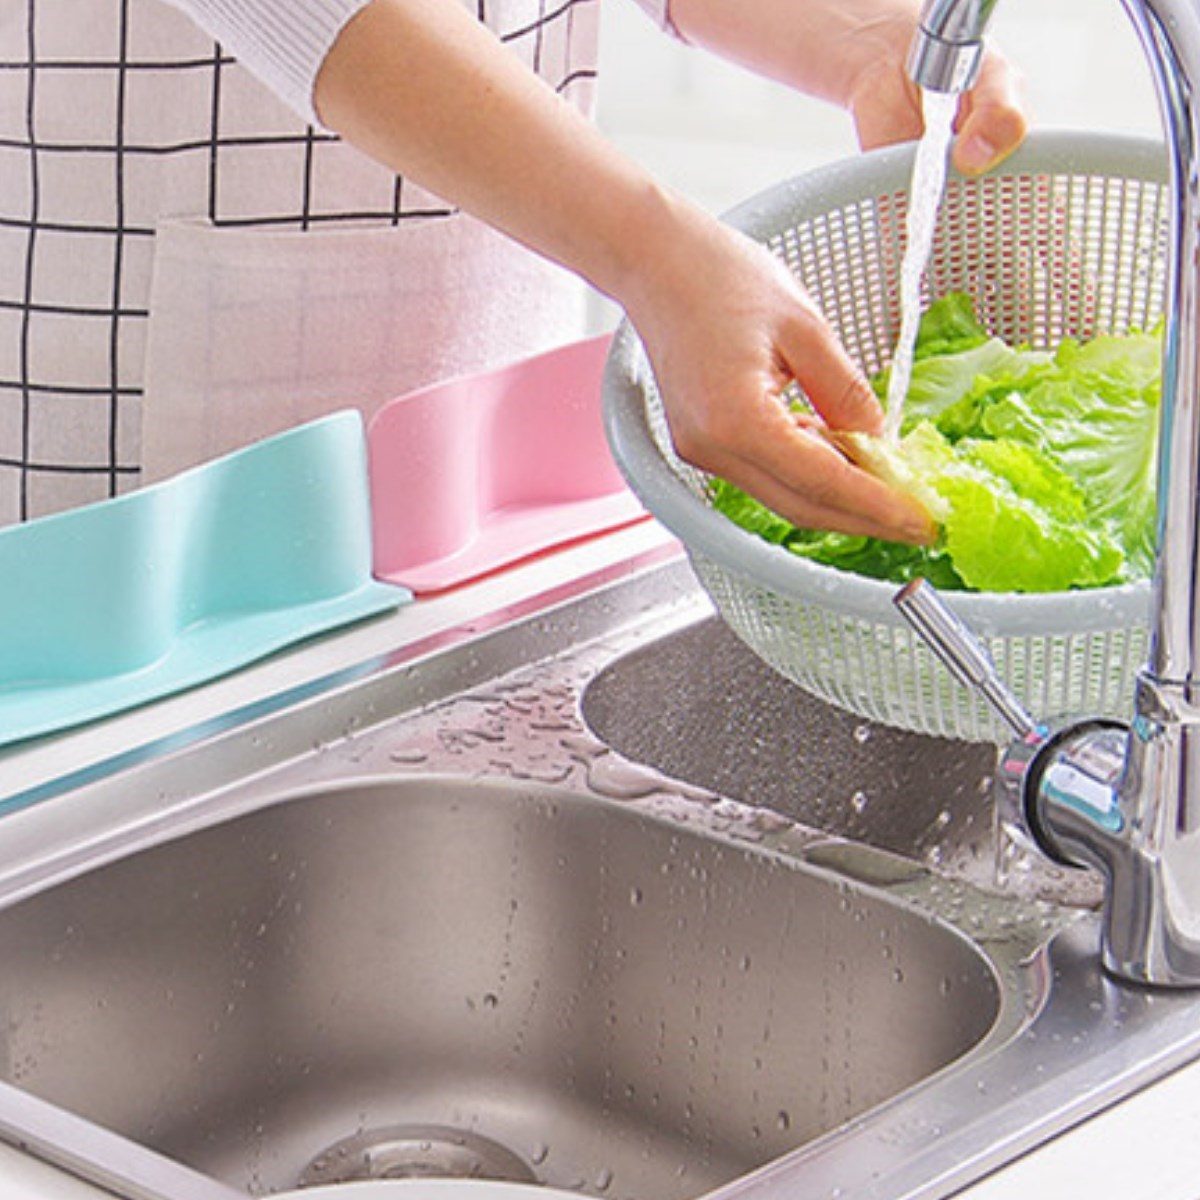 CLZ192 Vantuzlu Kauçuk Sıvı Su Sızdırmaz İzalasyon Mutfak Banyo Duş Bariyeri Lavabo Kenar Tutucu Set (4172)